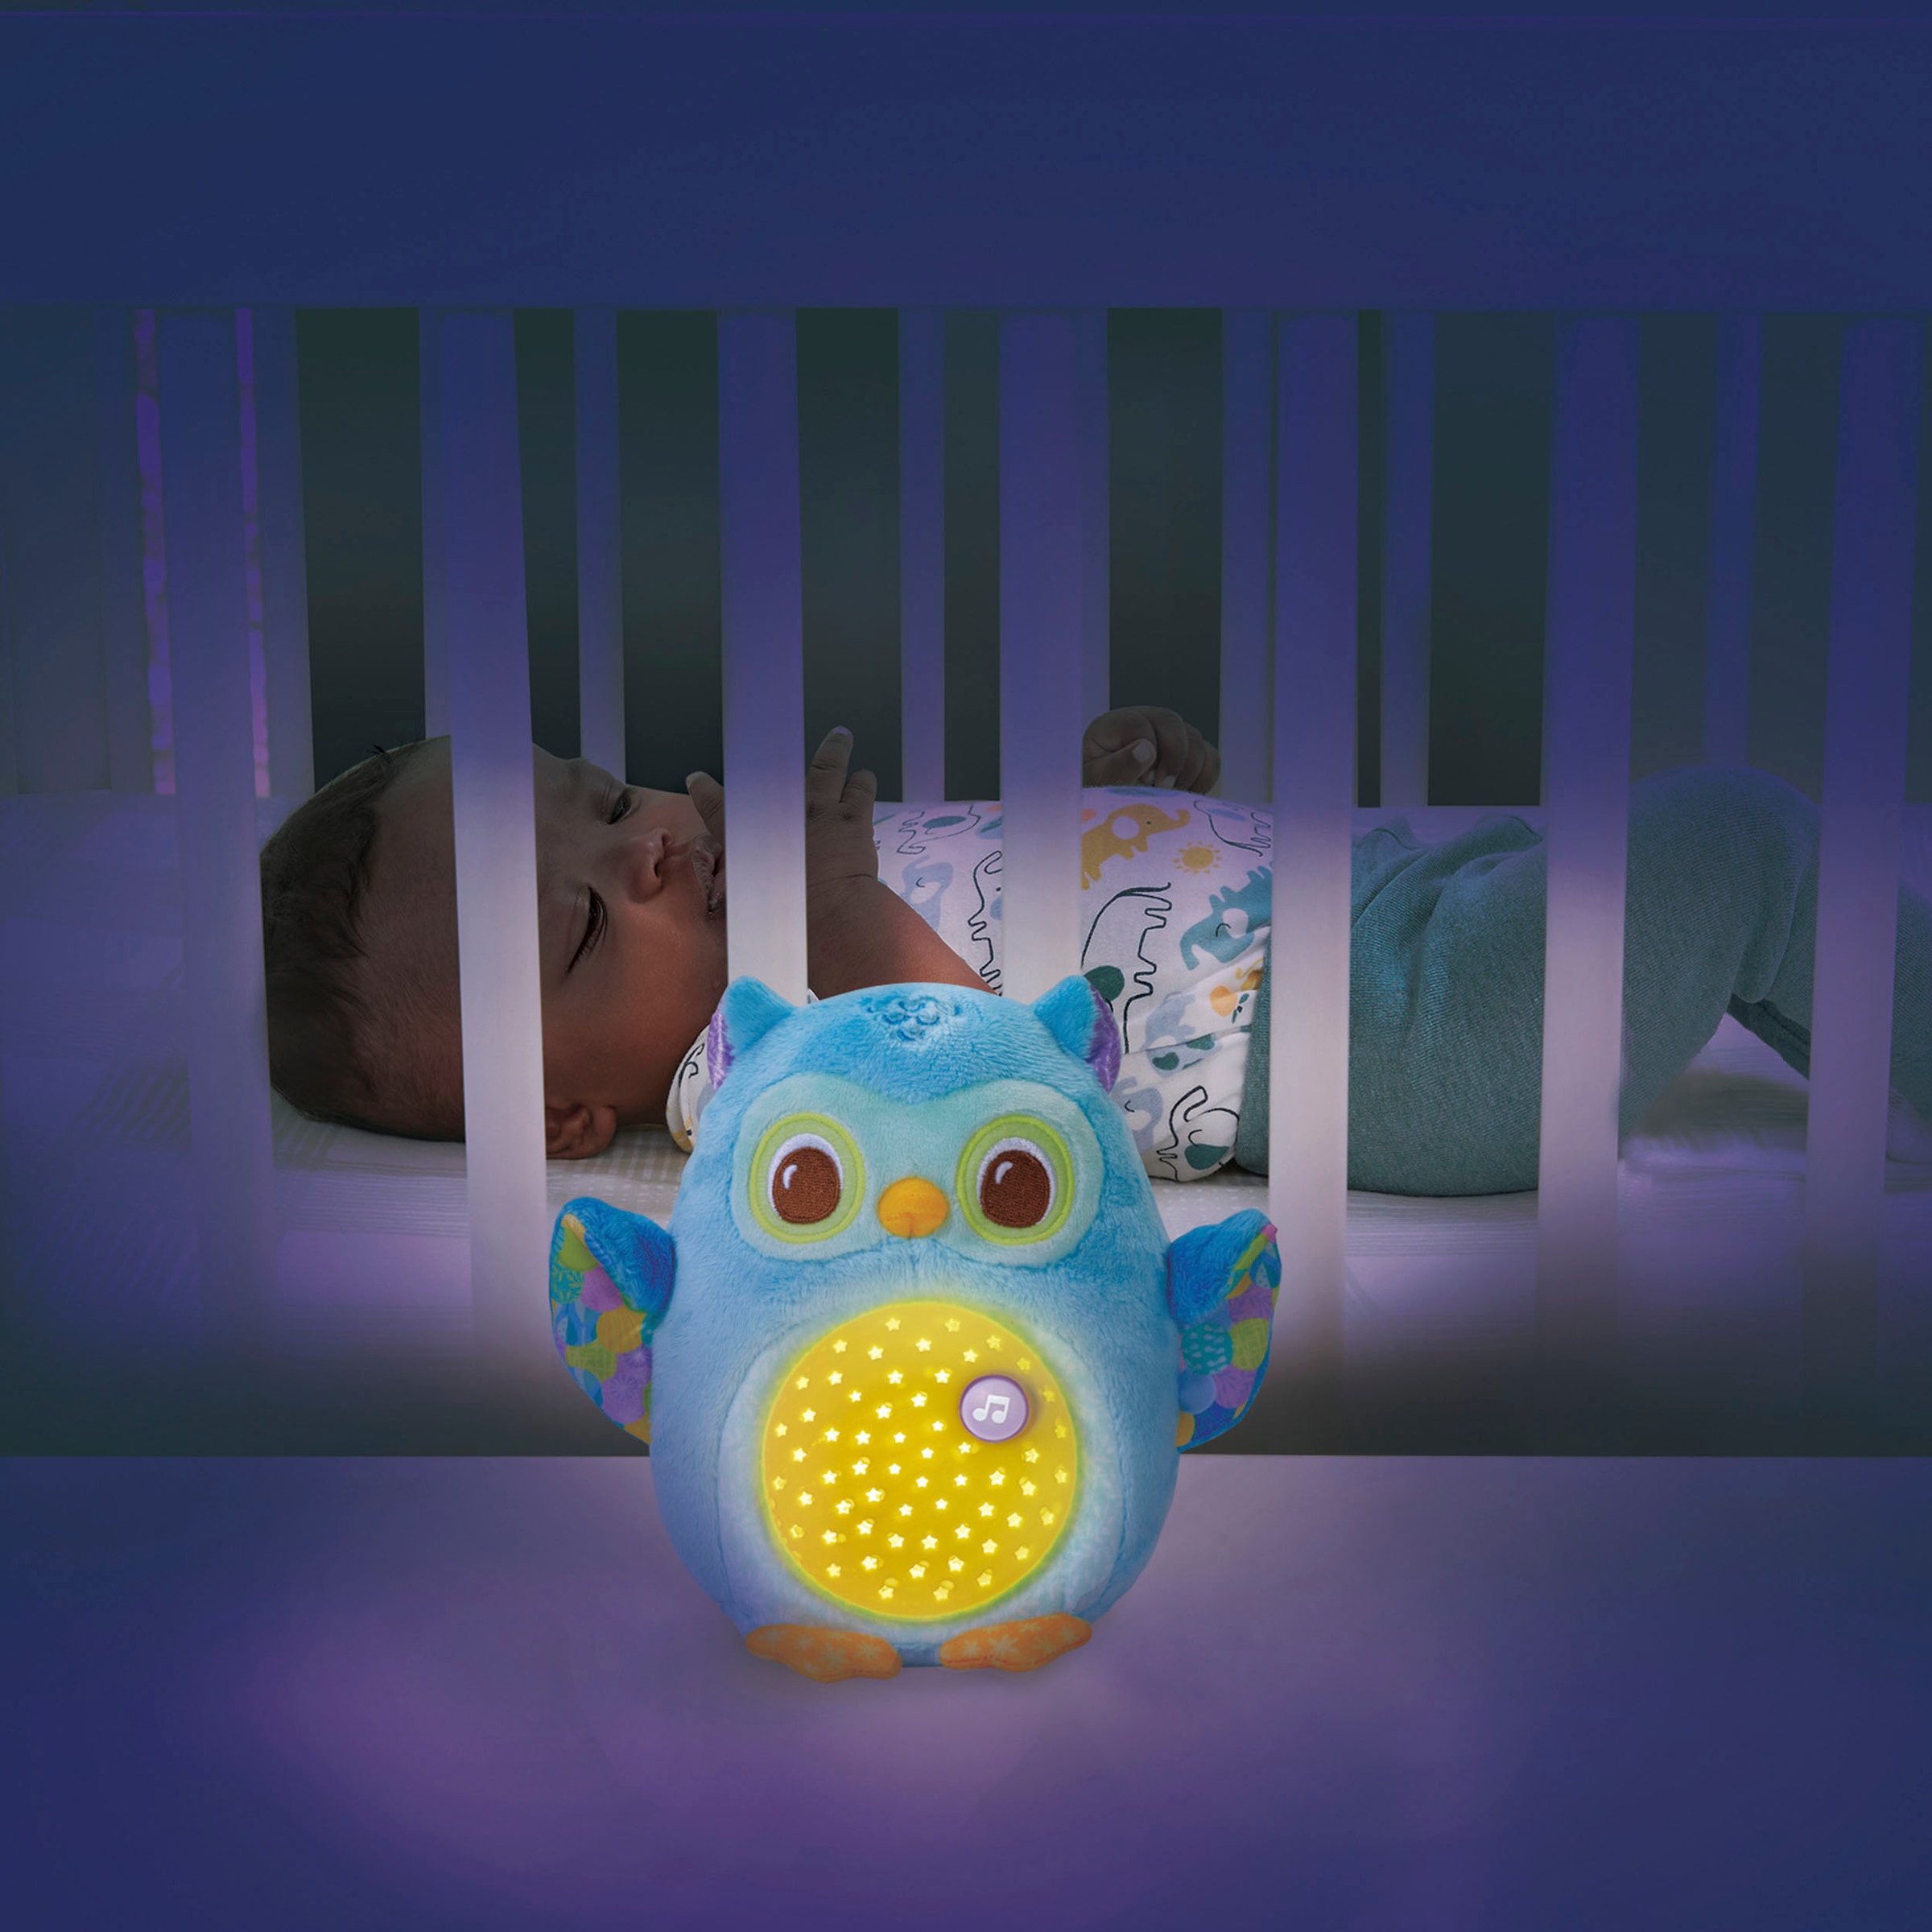 Vtech® Kuscheltier »Vtech Baby, Leuchtende Plüscheule«, mit Licht- und  Soundeffekt bei